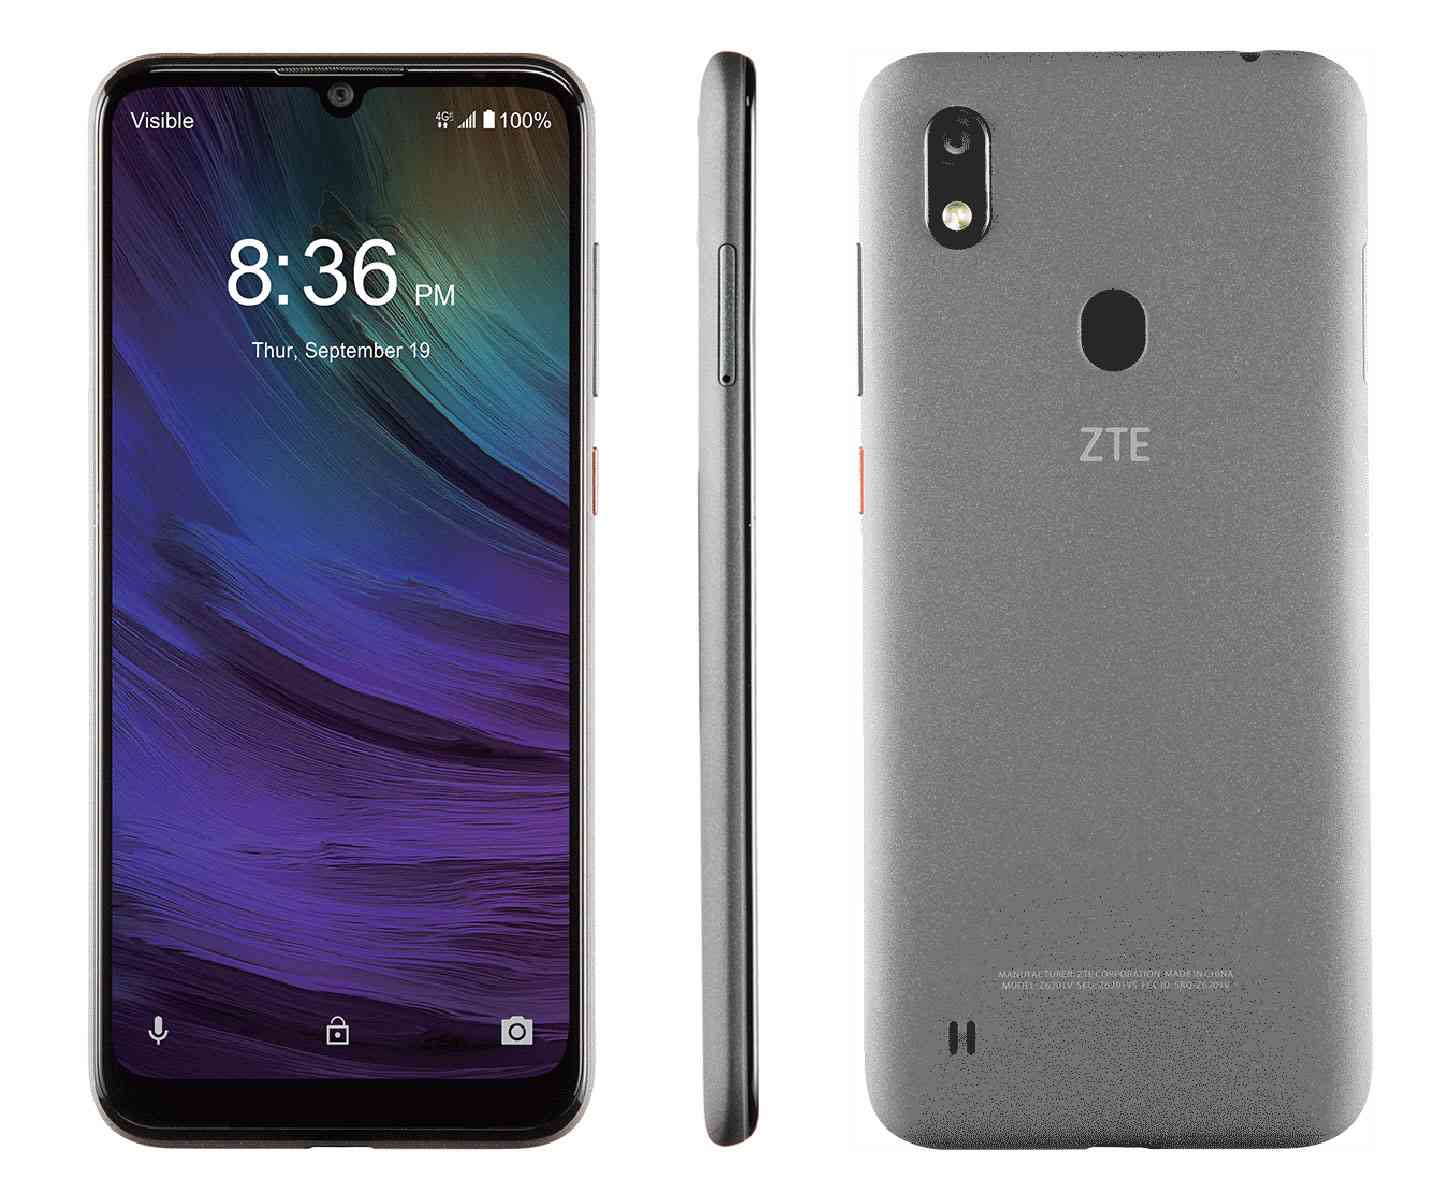 Đánh giá điện thoại thông minh ZTE Blade A7 Prime với các tính năng chính